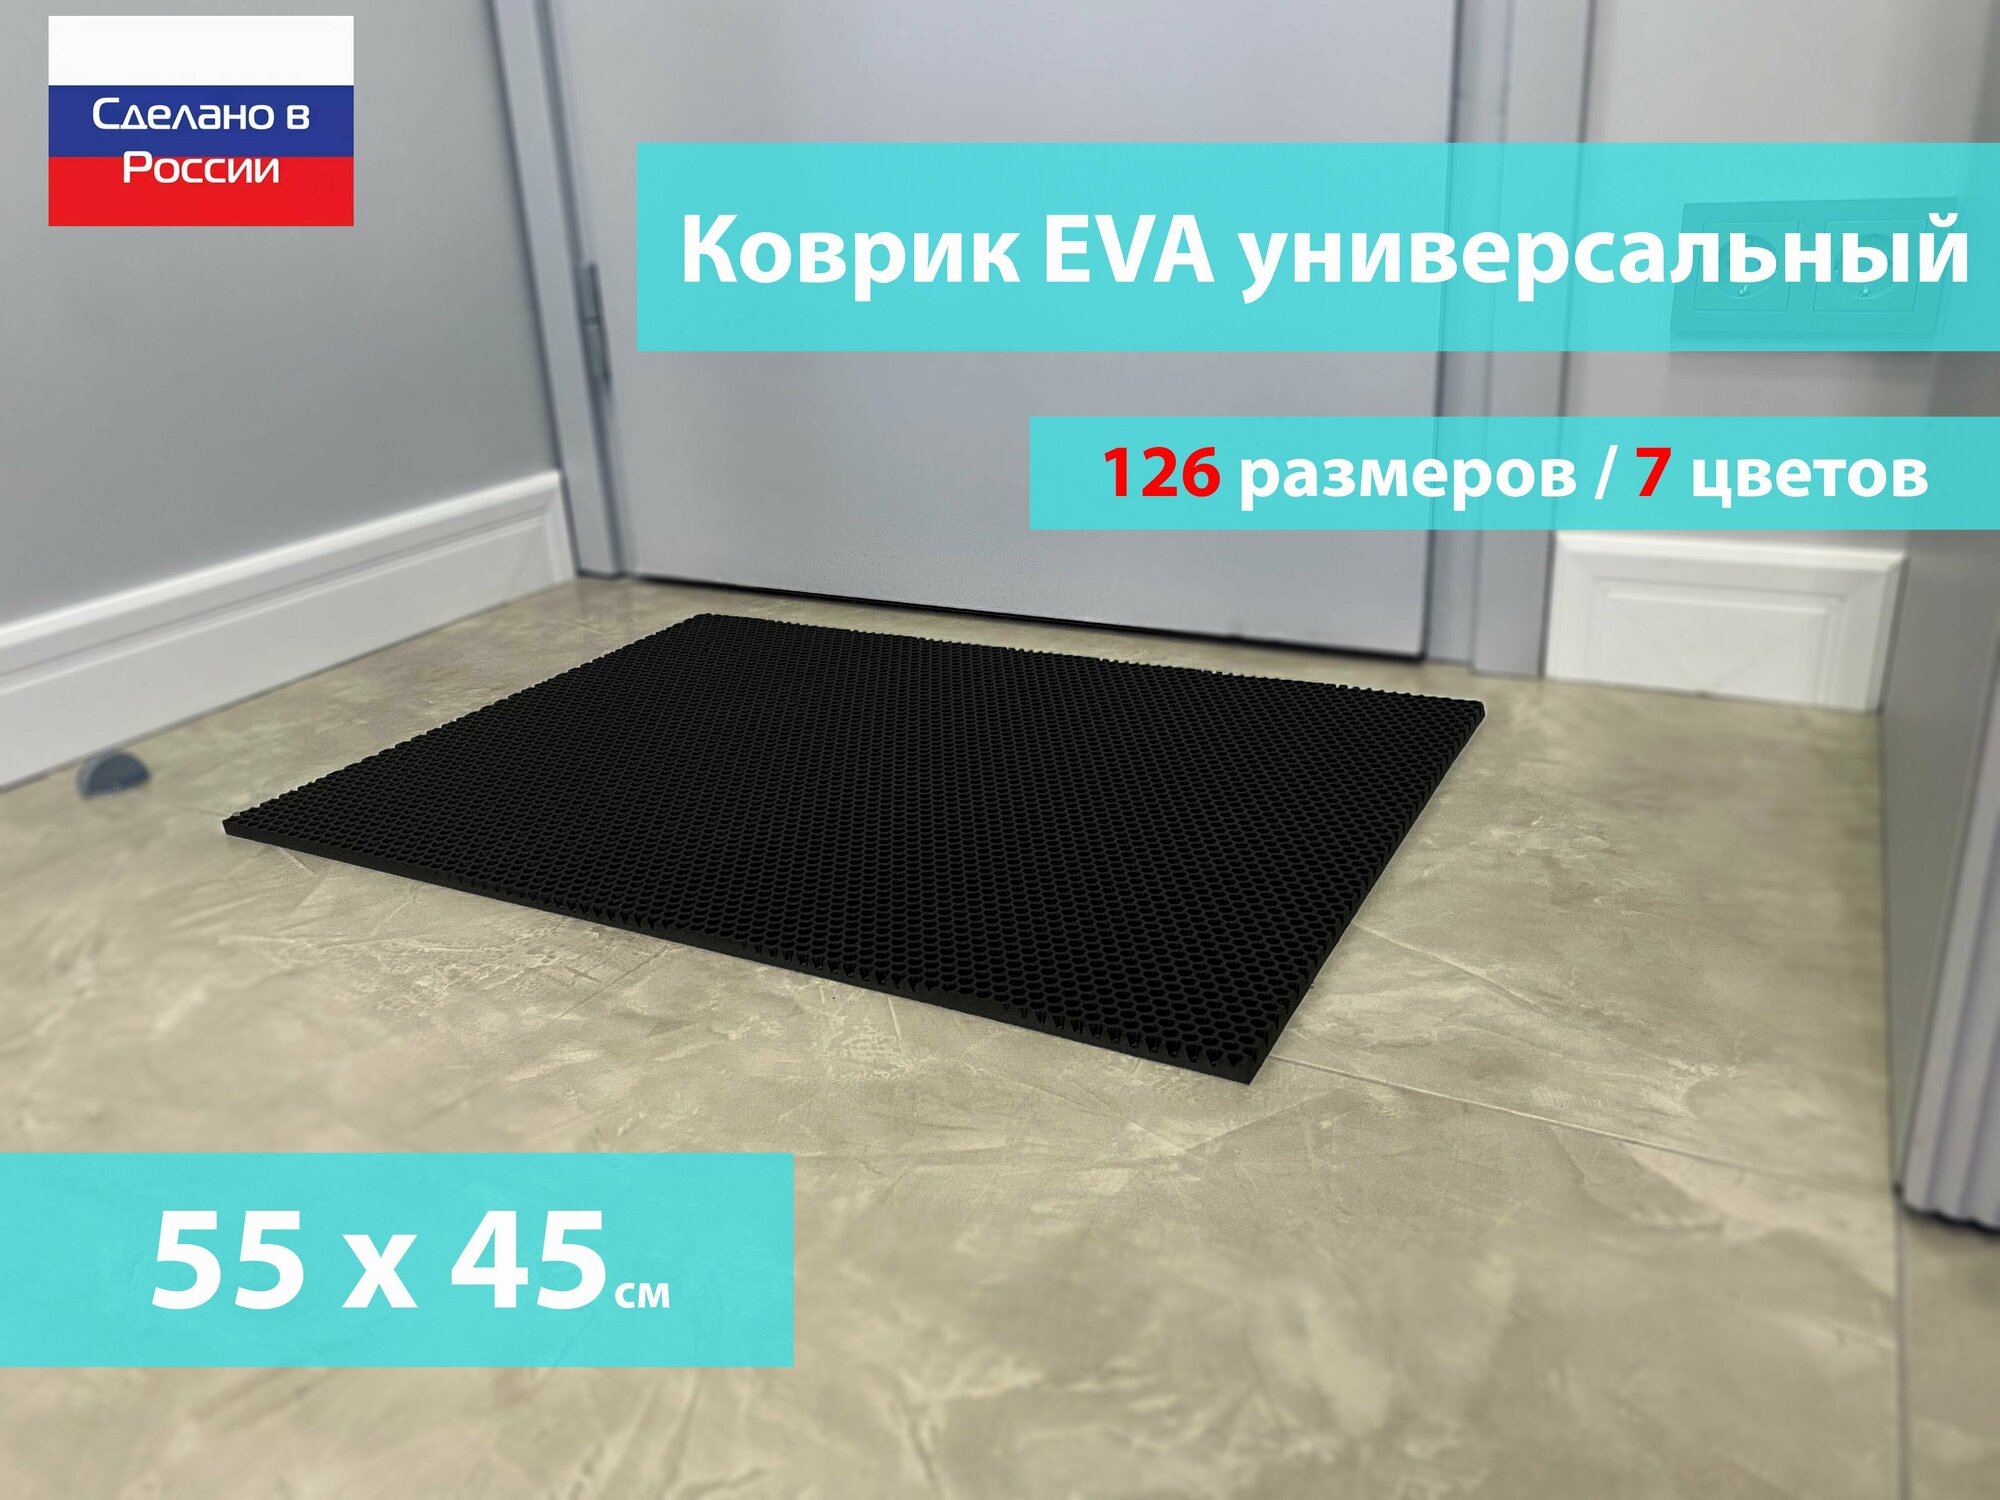 Коврик придверный EVA (ЕВА) в прихожую для обуви / Ковер ЭВА на пол перед дверью/ черный / размер 55 х 45 см